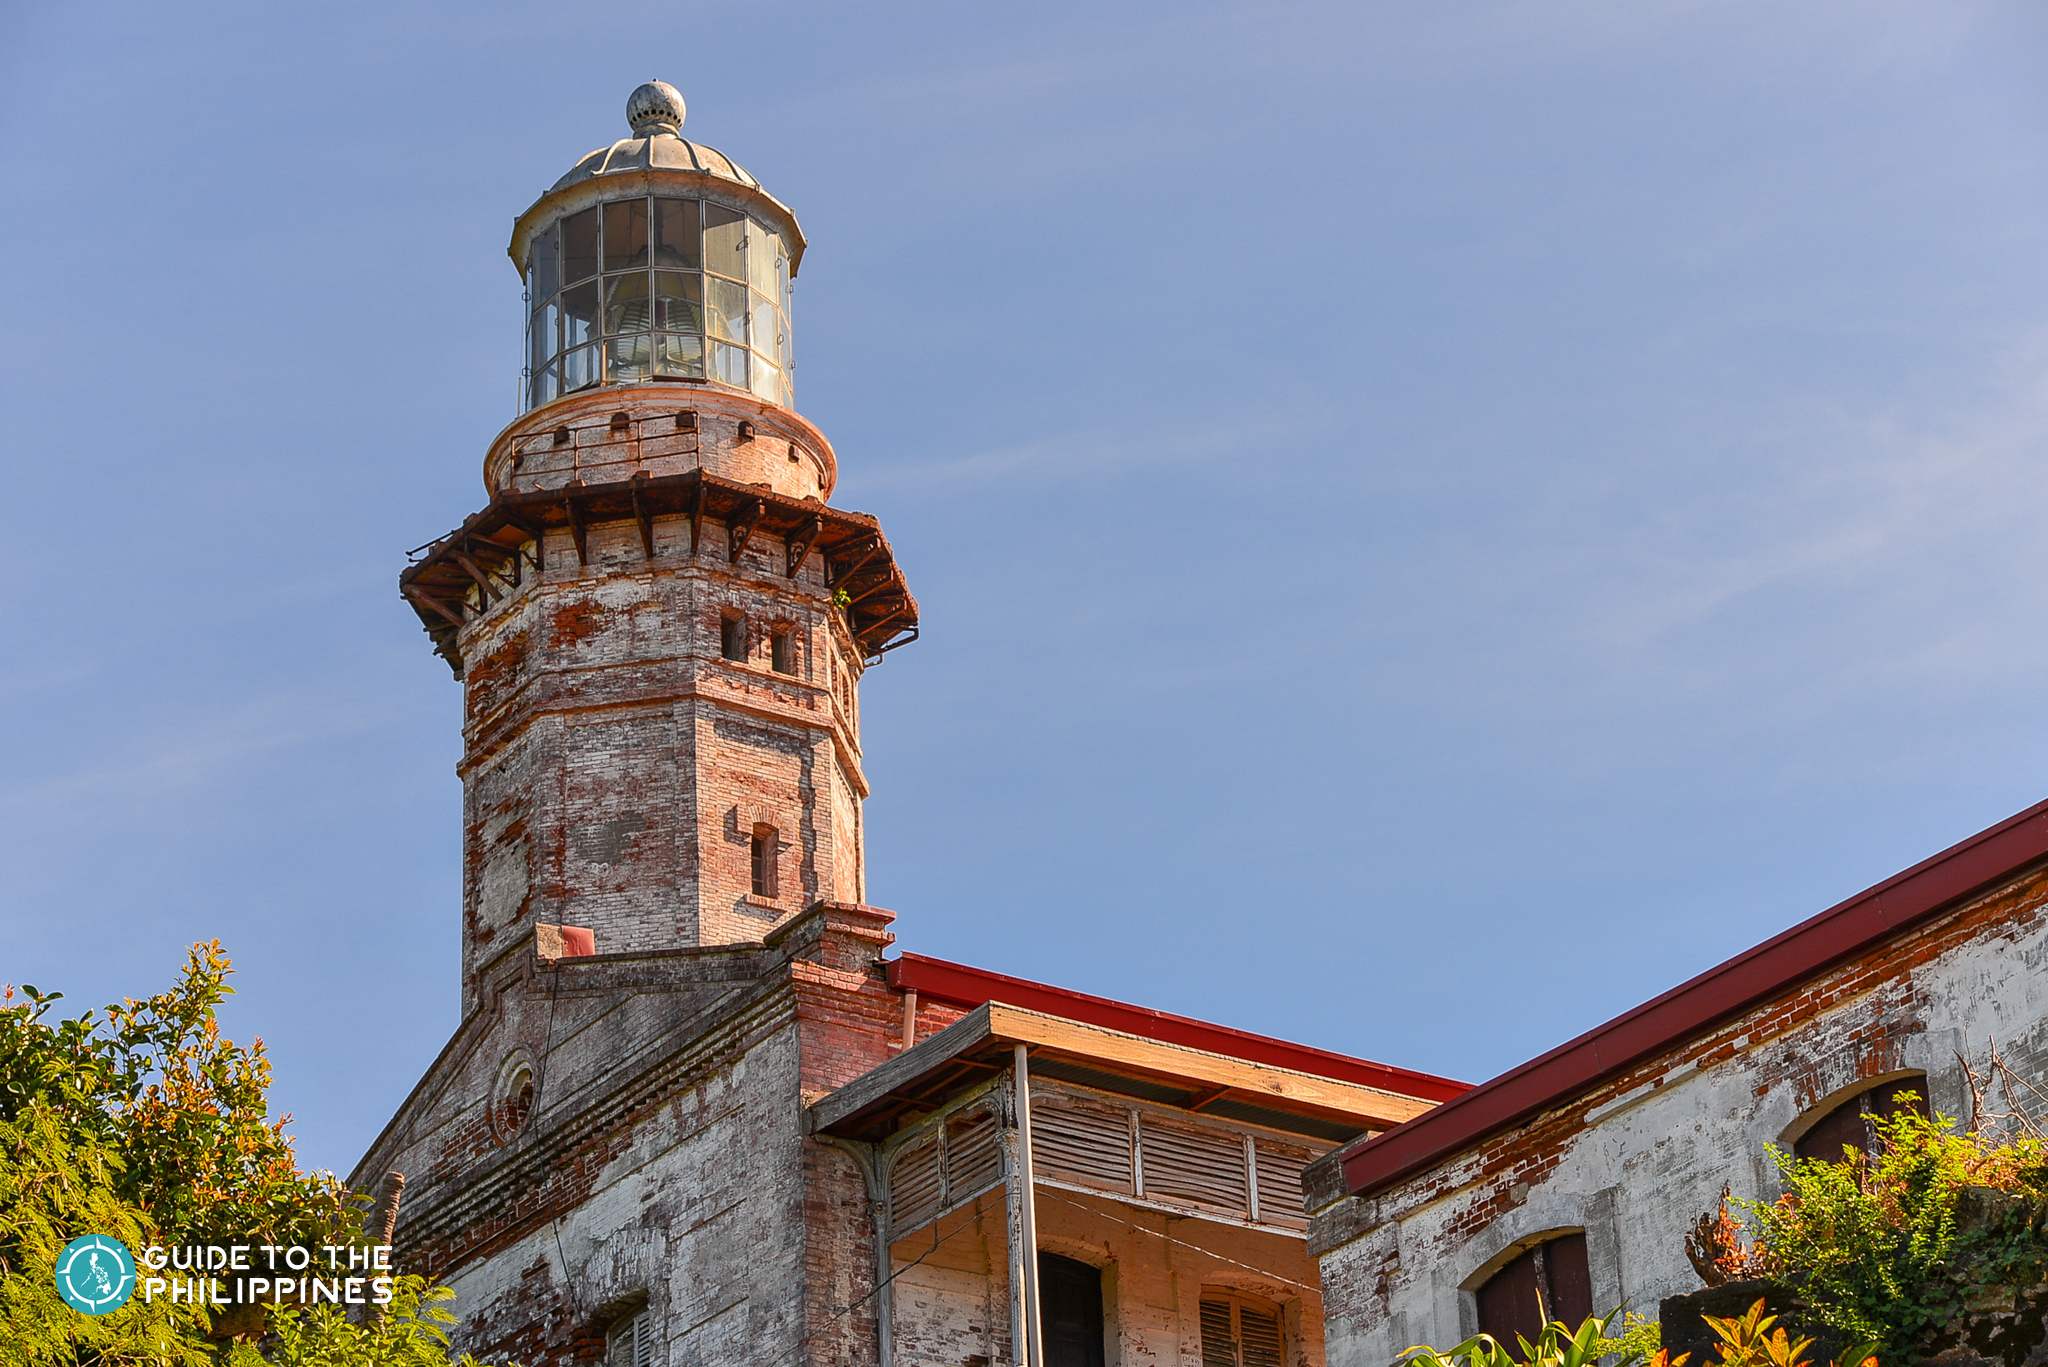 Cape Bojeador Lighthouse in Ilocos